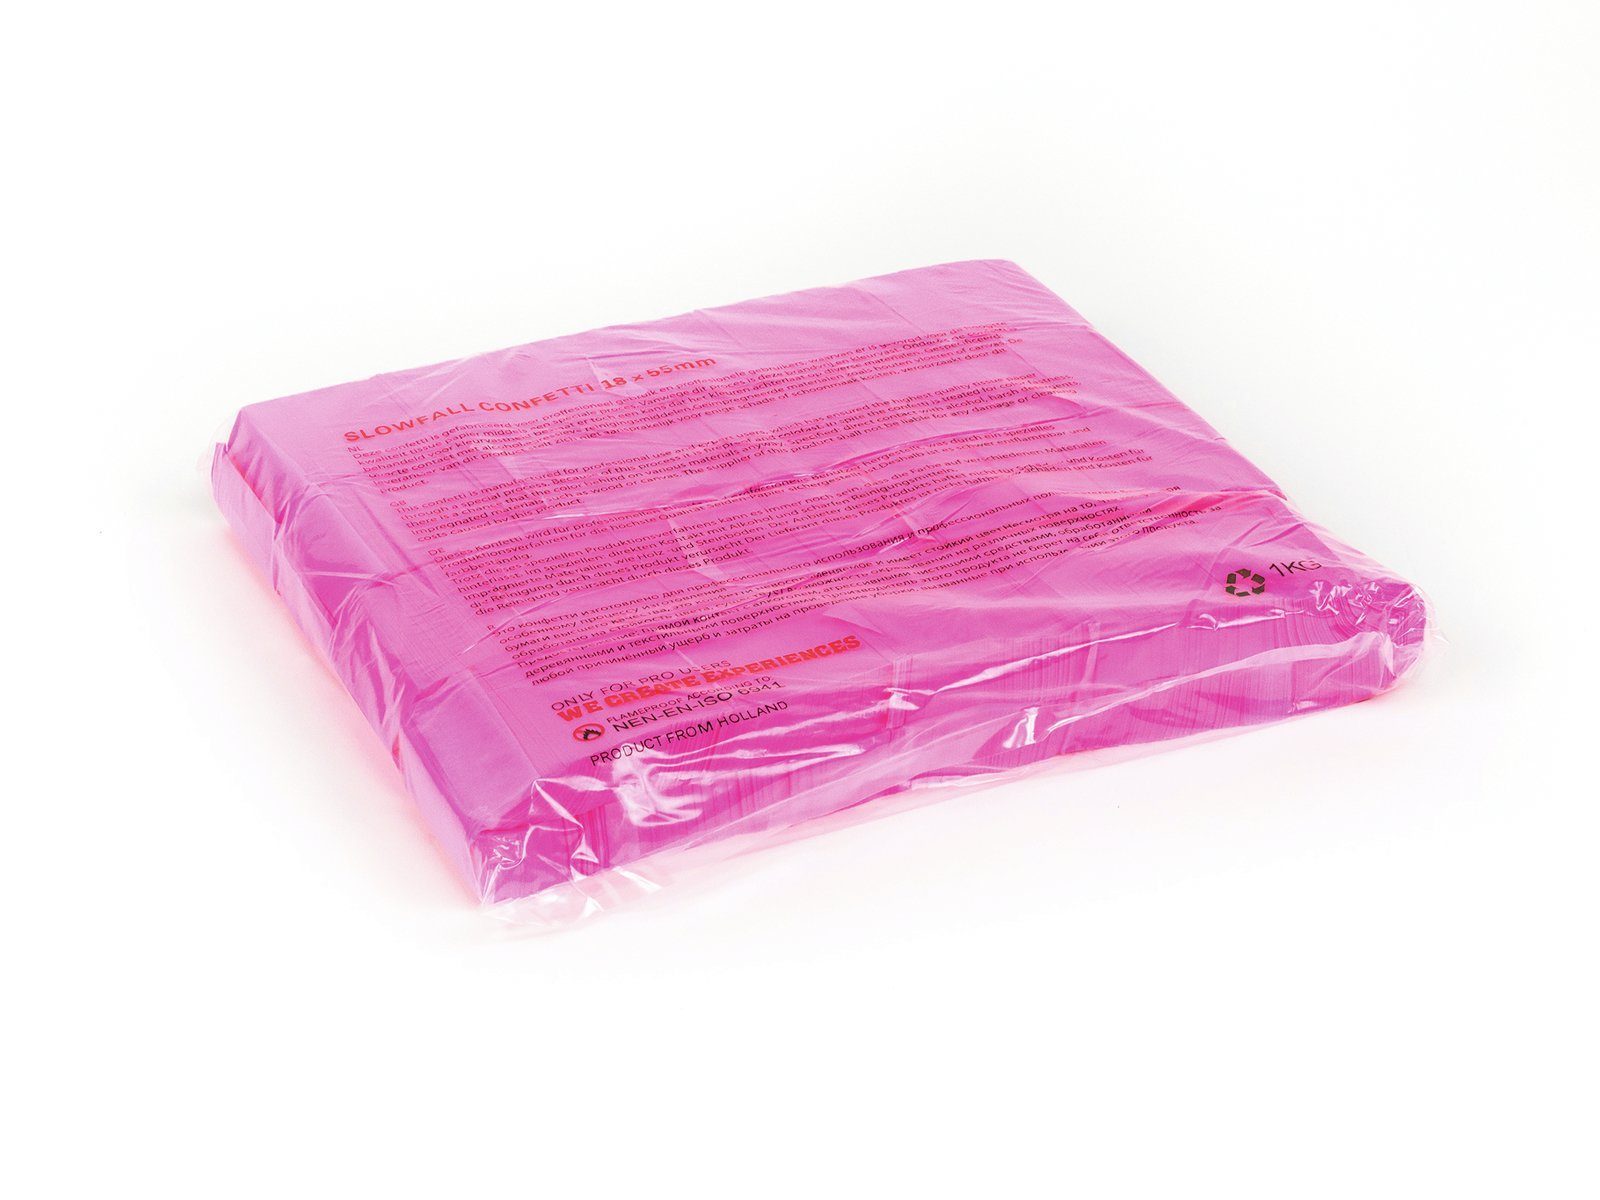 TCM Fx Konfetti Slowfall Konfetti Farben pink verschiedene neon, rechteckig 55x18mm, UV-aktiv, erhältlich 1kg